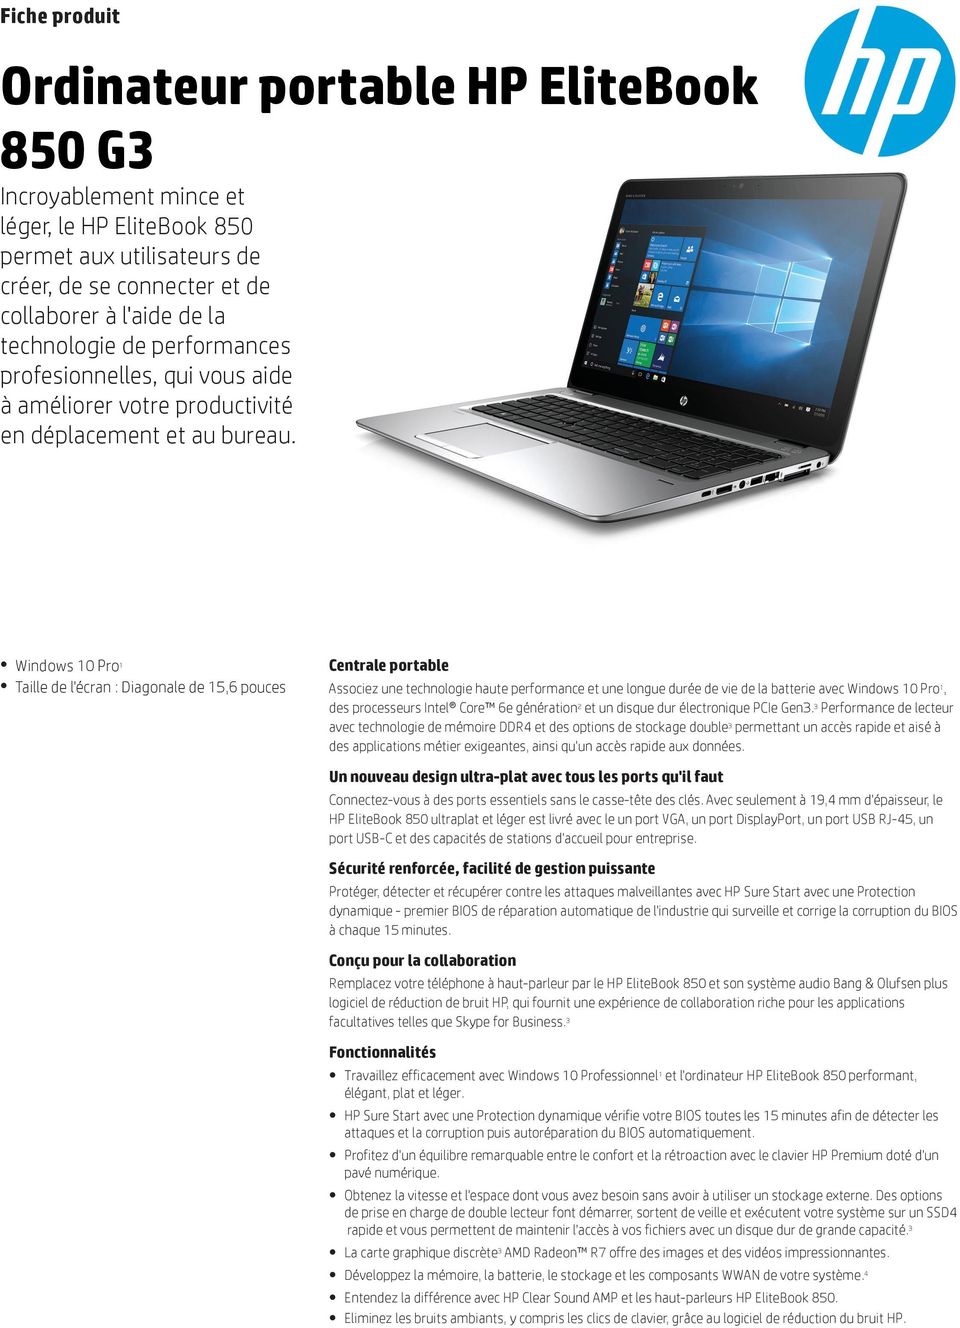 Windows 10 Pro 1 Taille de l'écran : Diagonale de 15,6 pouces Centrale portable Associez une technologie haute performance et une longue durée de vie de la batterie avec Windows 10 Pro 1, des